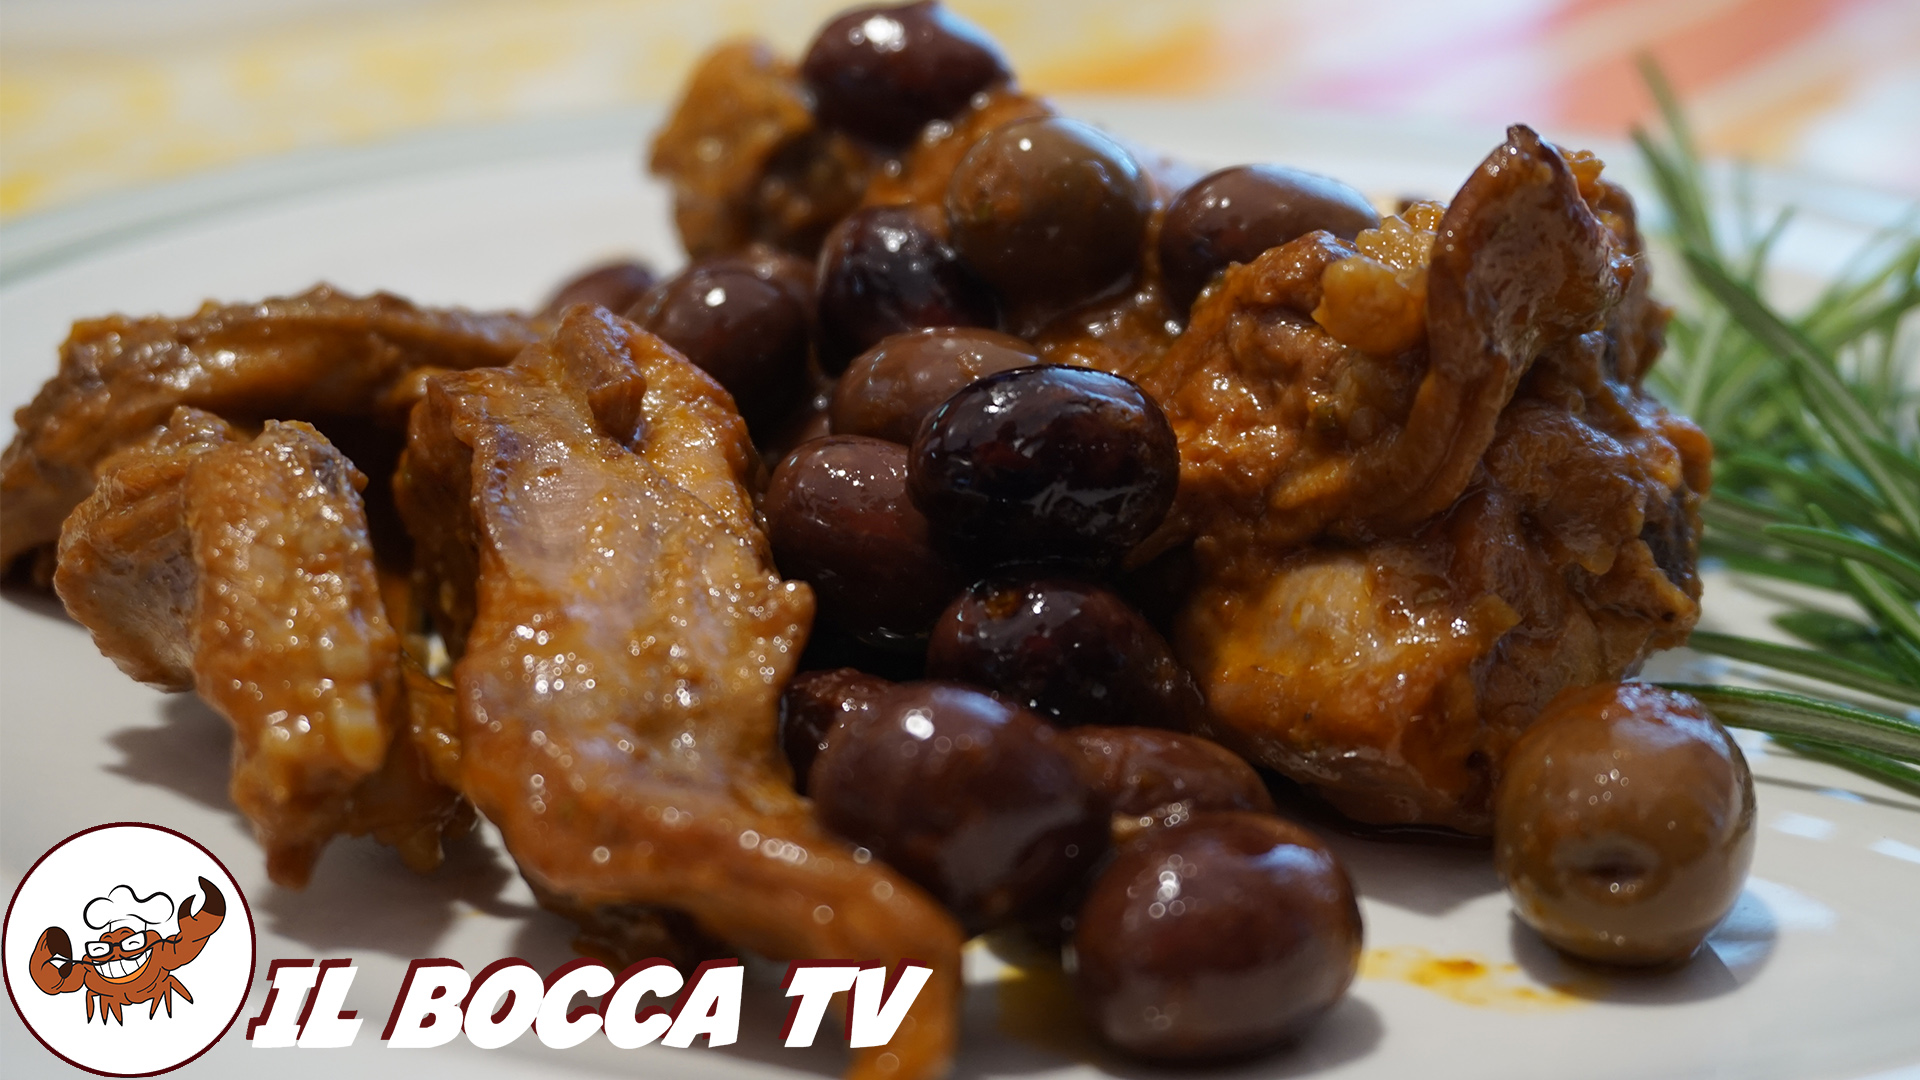 Coniglio in umido con olive, il Bocca TV